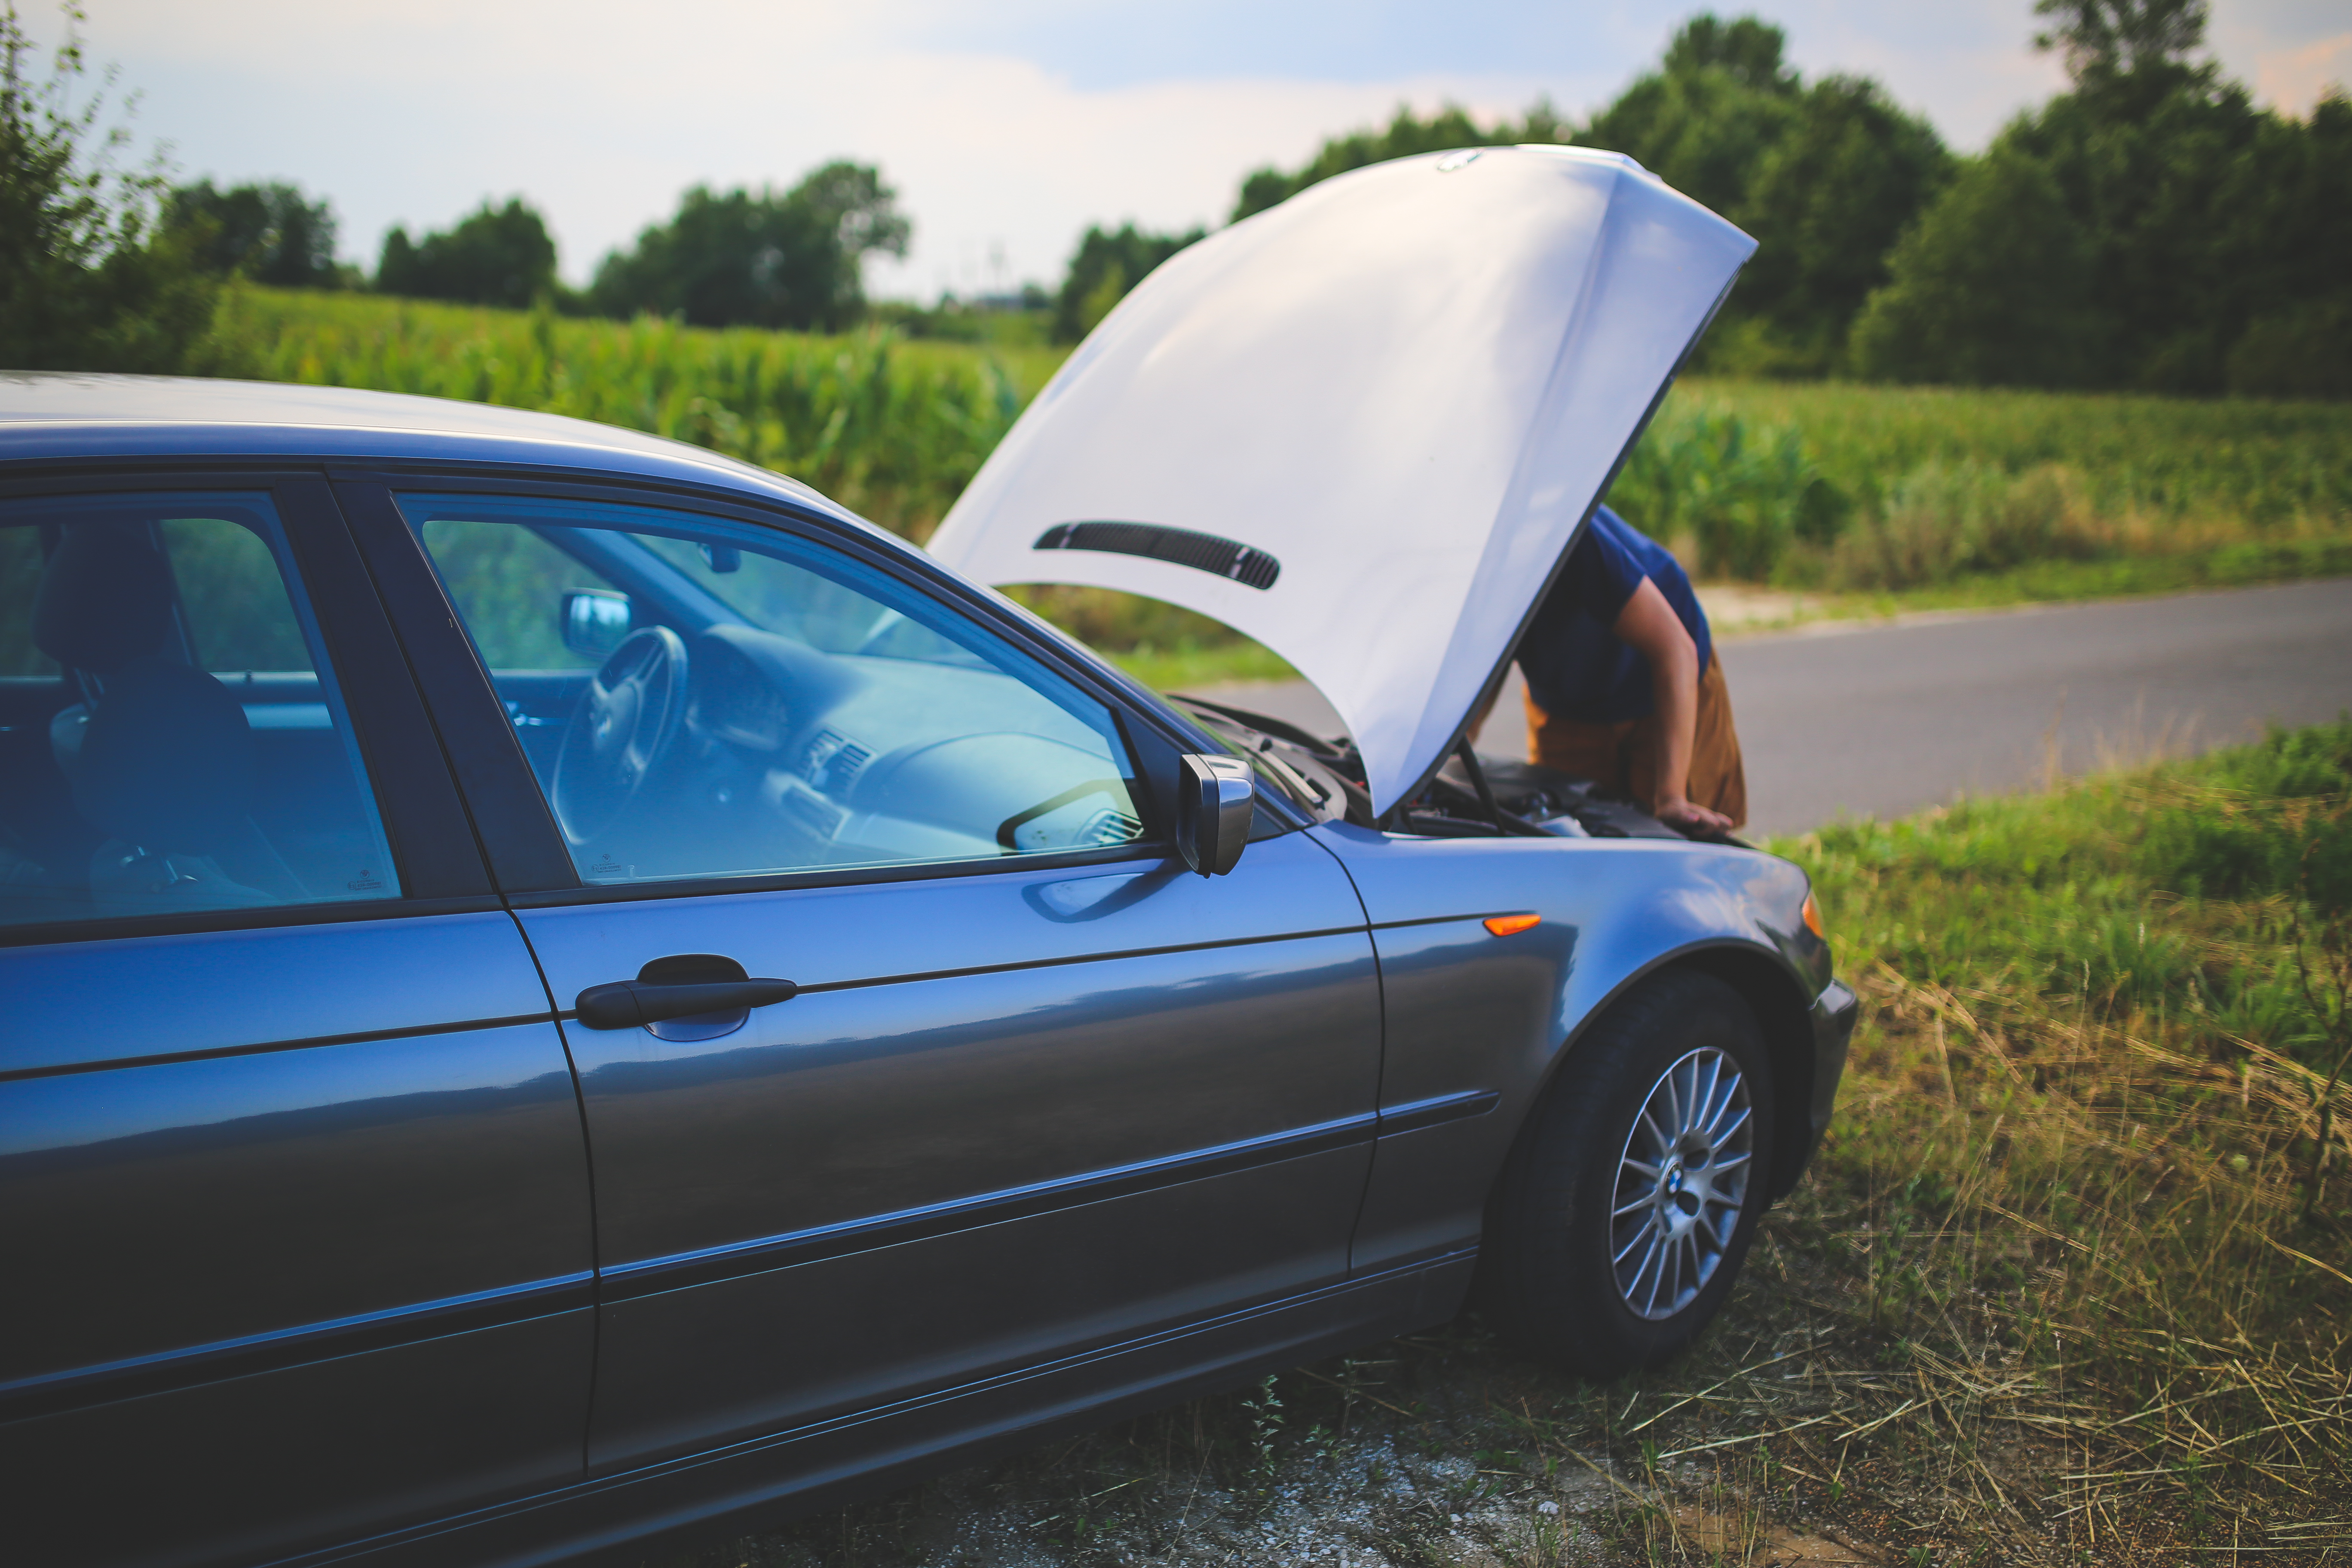 Di mana pun mobil kamu mengalami masalah akan mendapat perbaikan dari asuransi mobil all risk